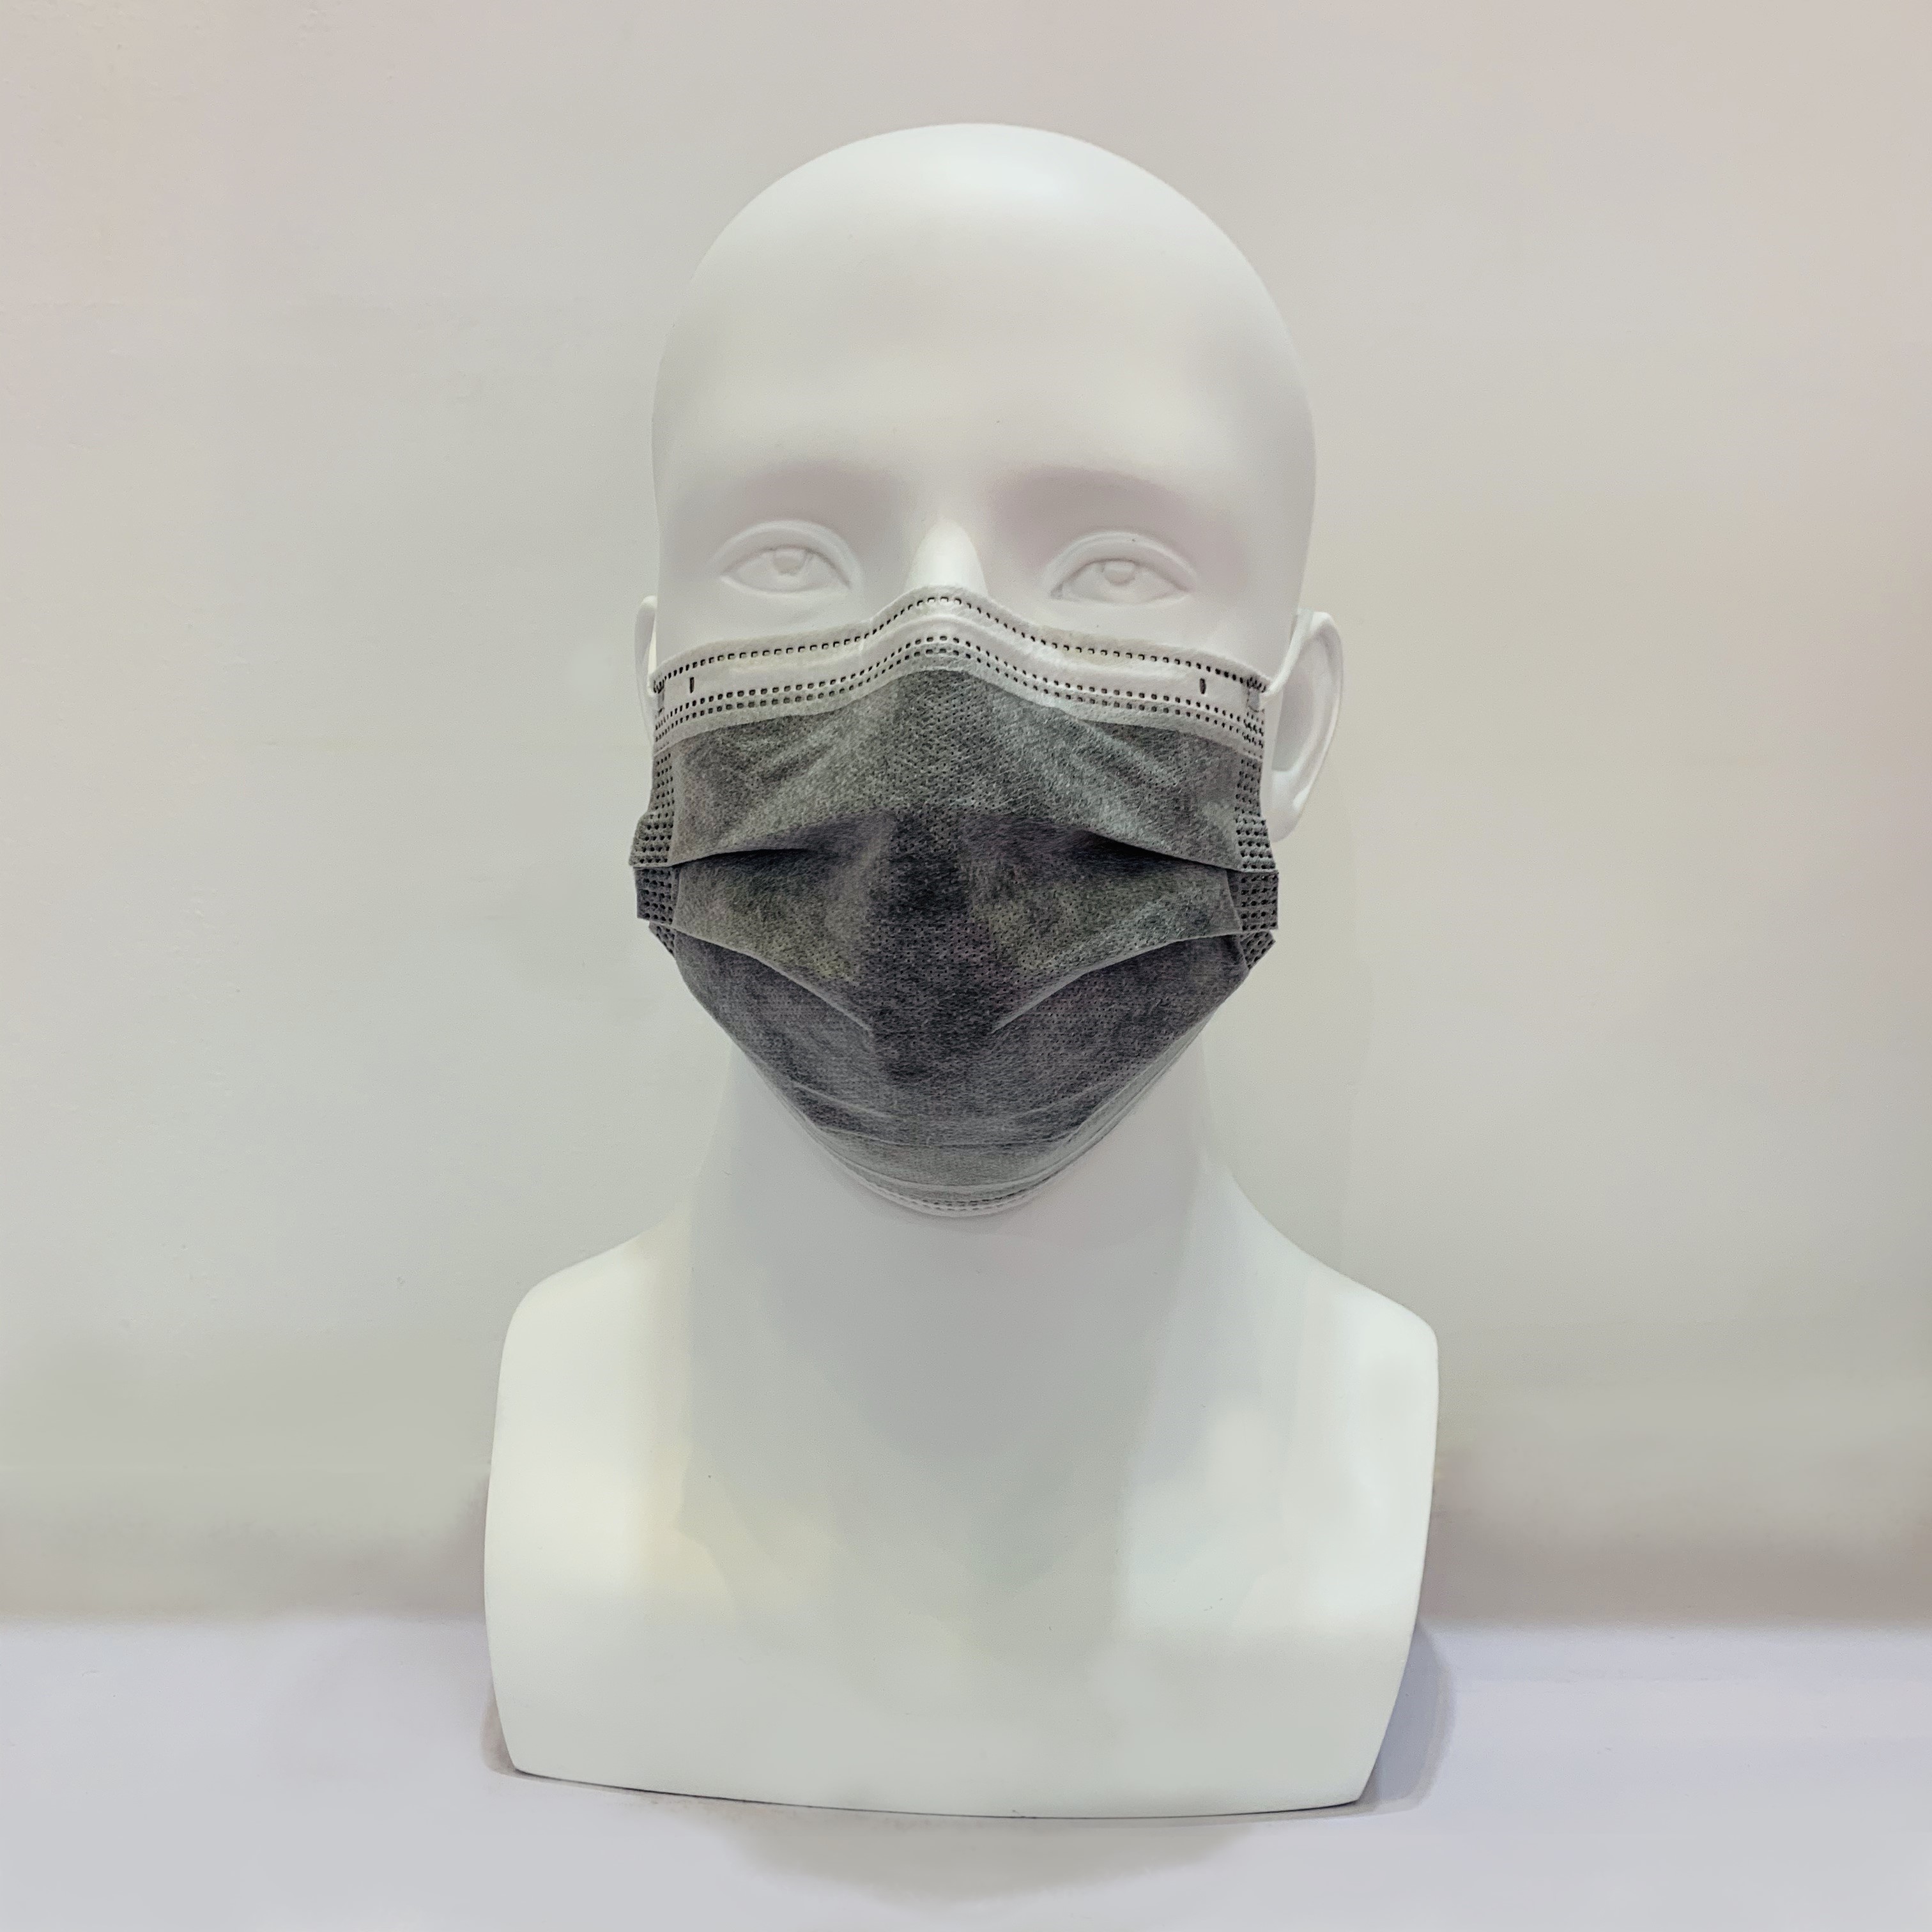 Maschera facciale con filtro ai carboni attivi antipolvere PM 2.5 monouso di colore grigio
